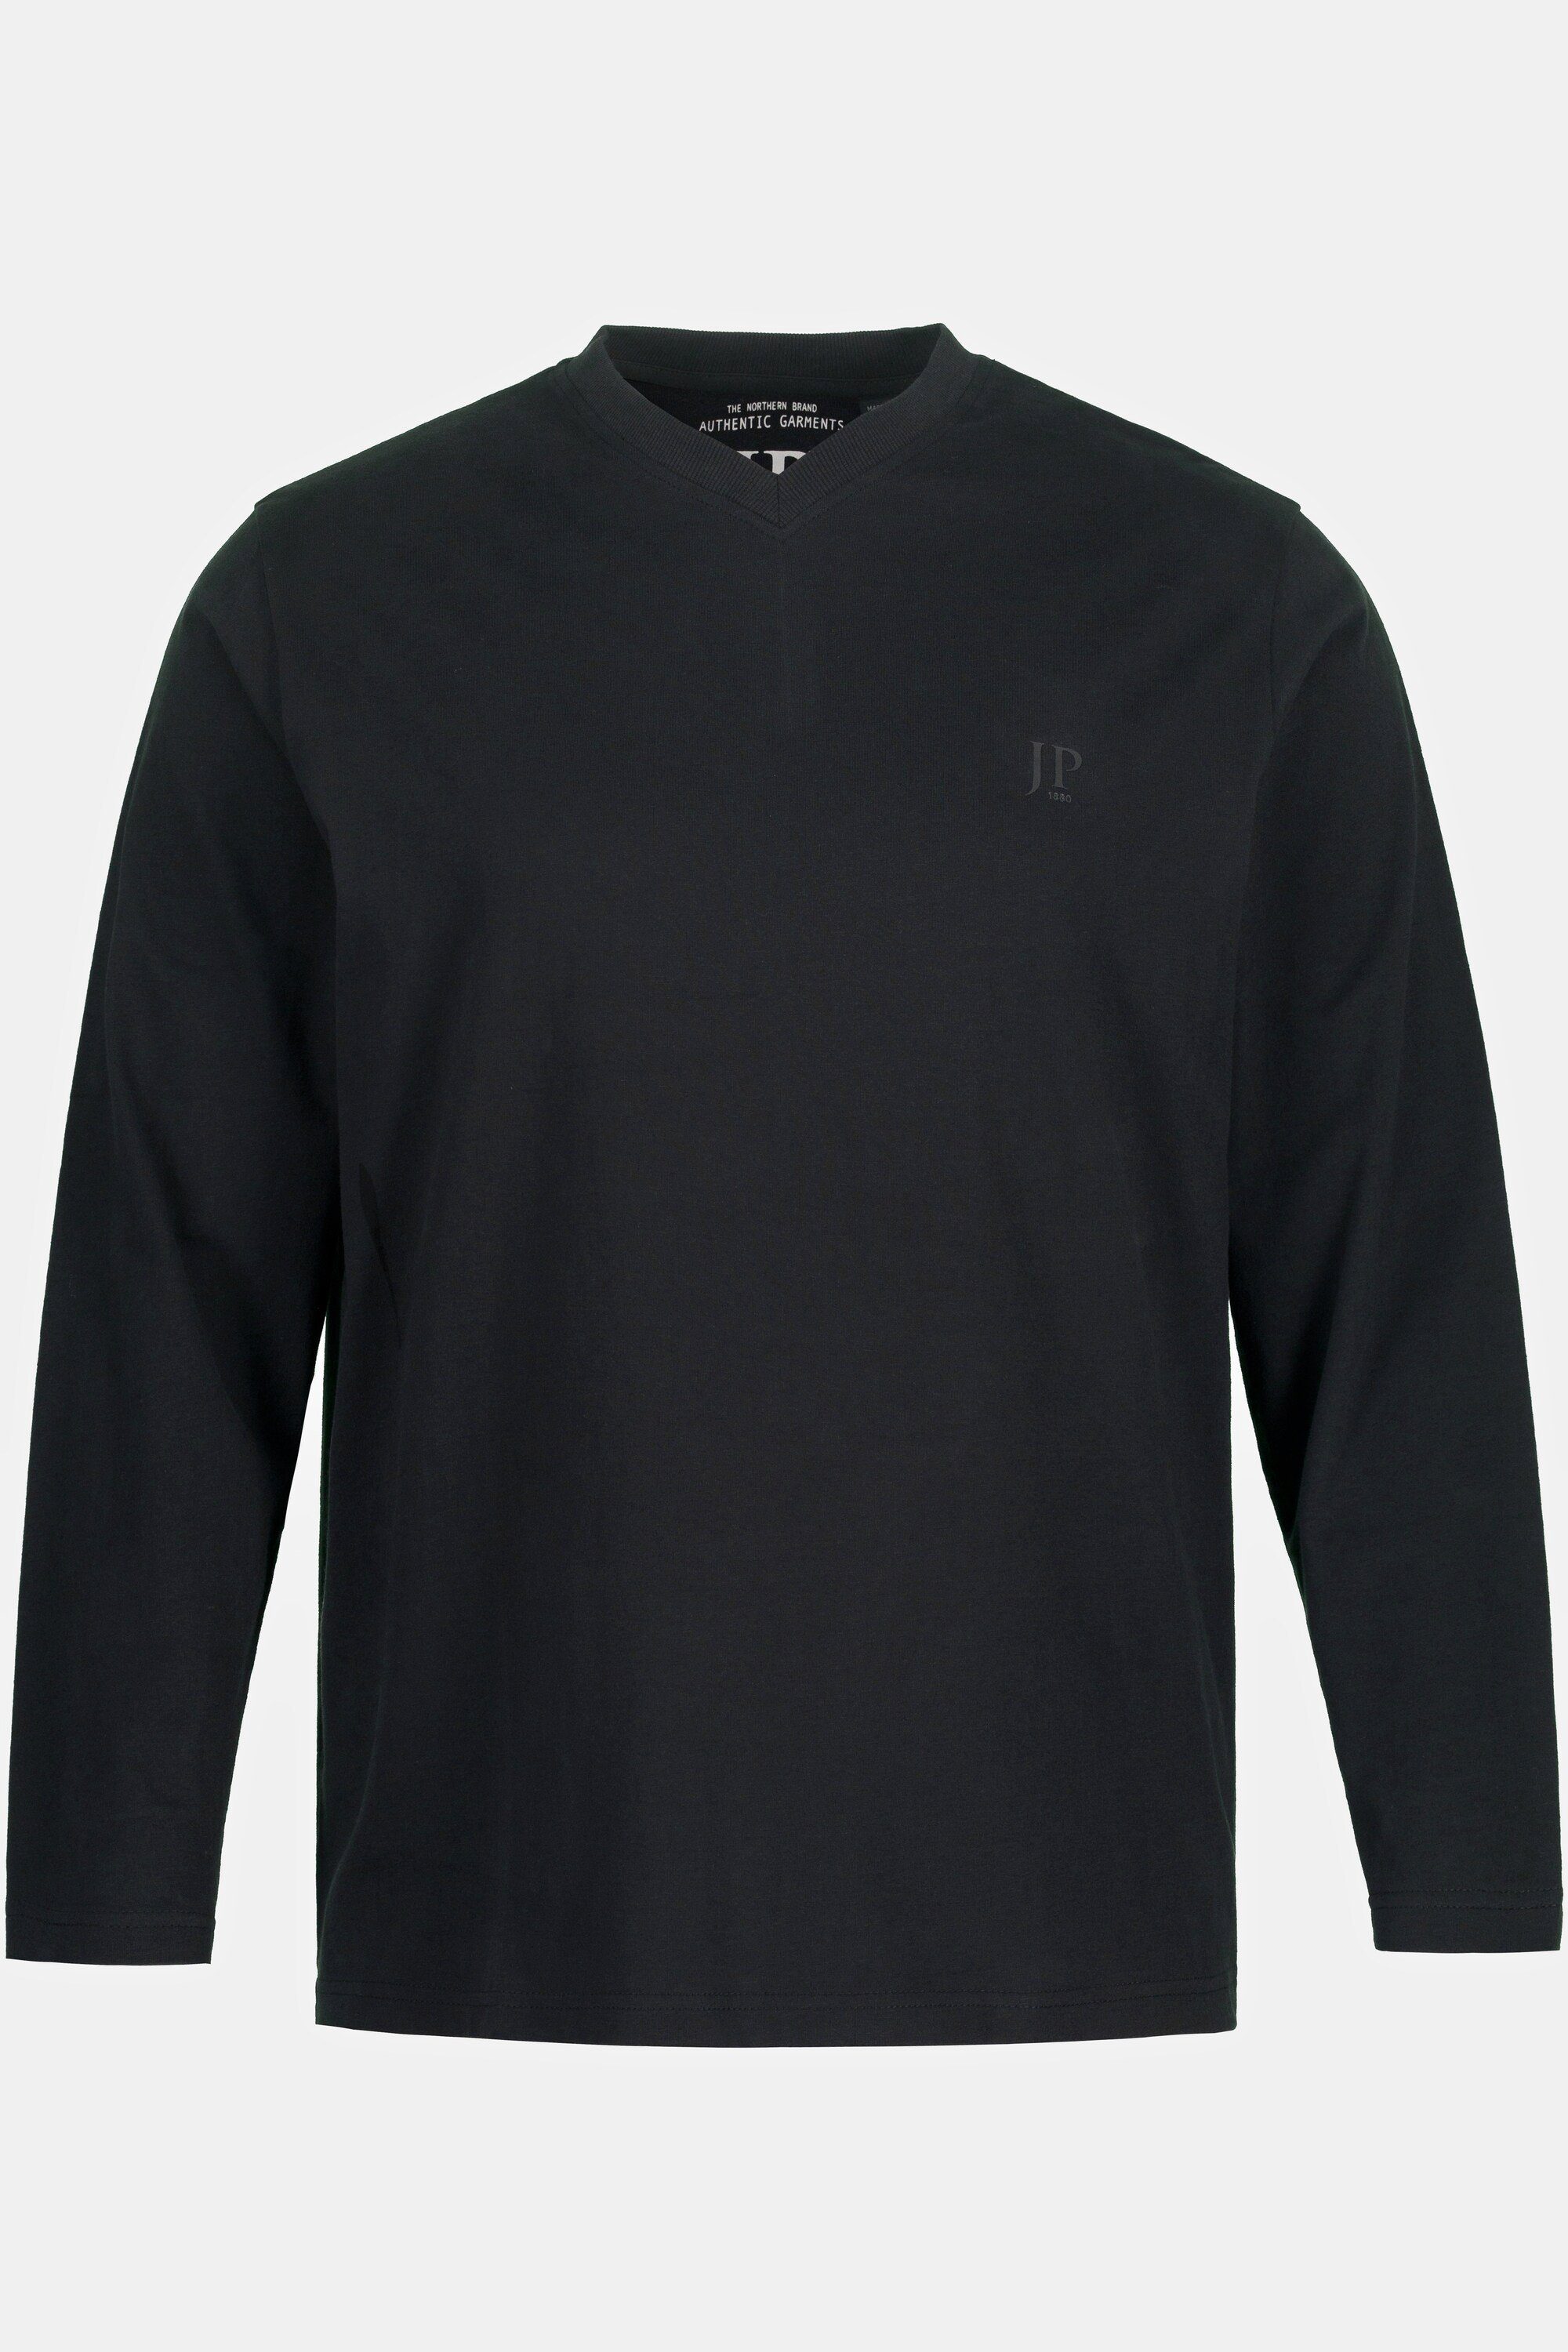 schwarz XL JP1880 bis 8 T-Shirt V-Ausschnitt T-Shirt Langarm